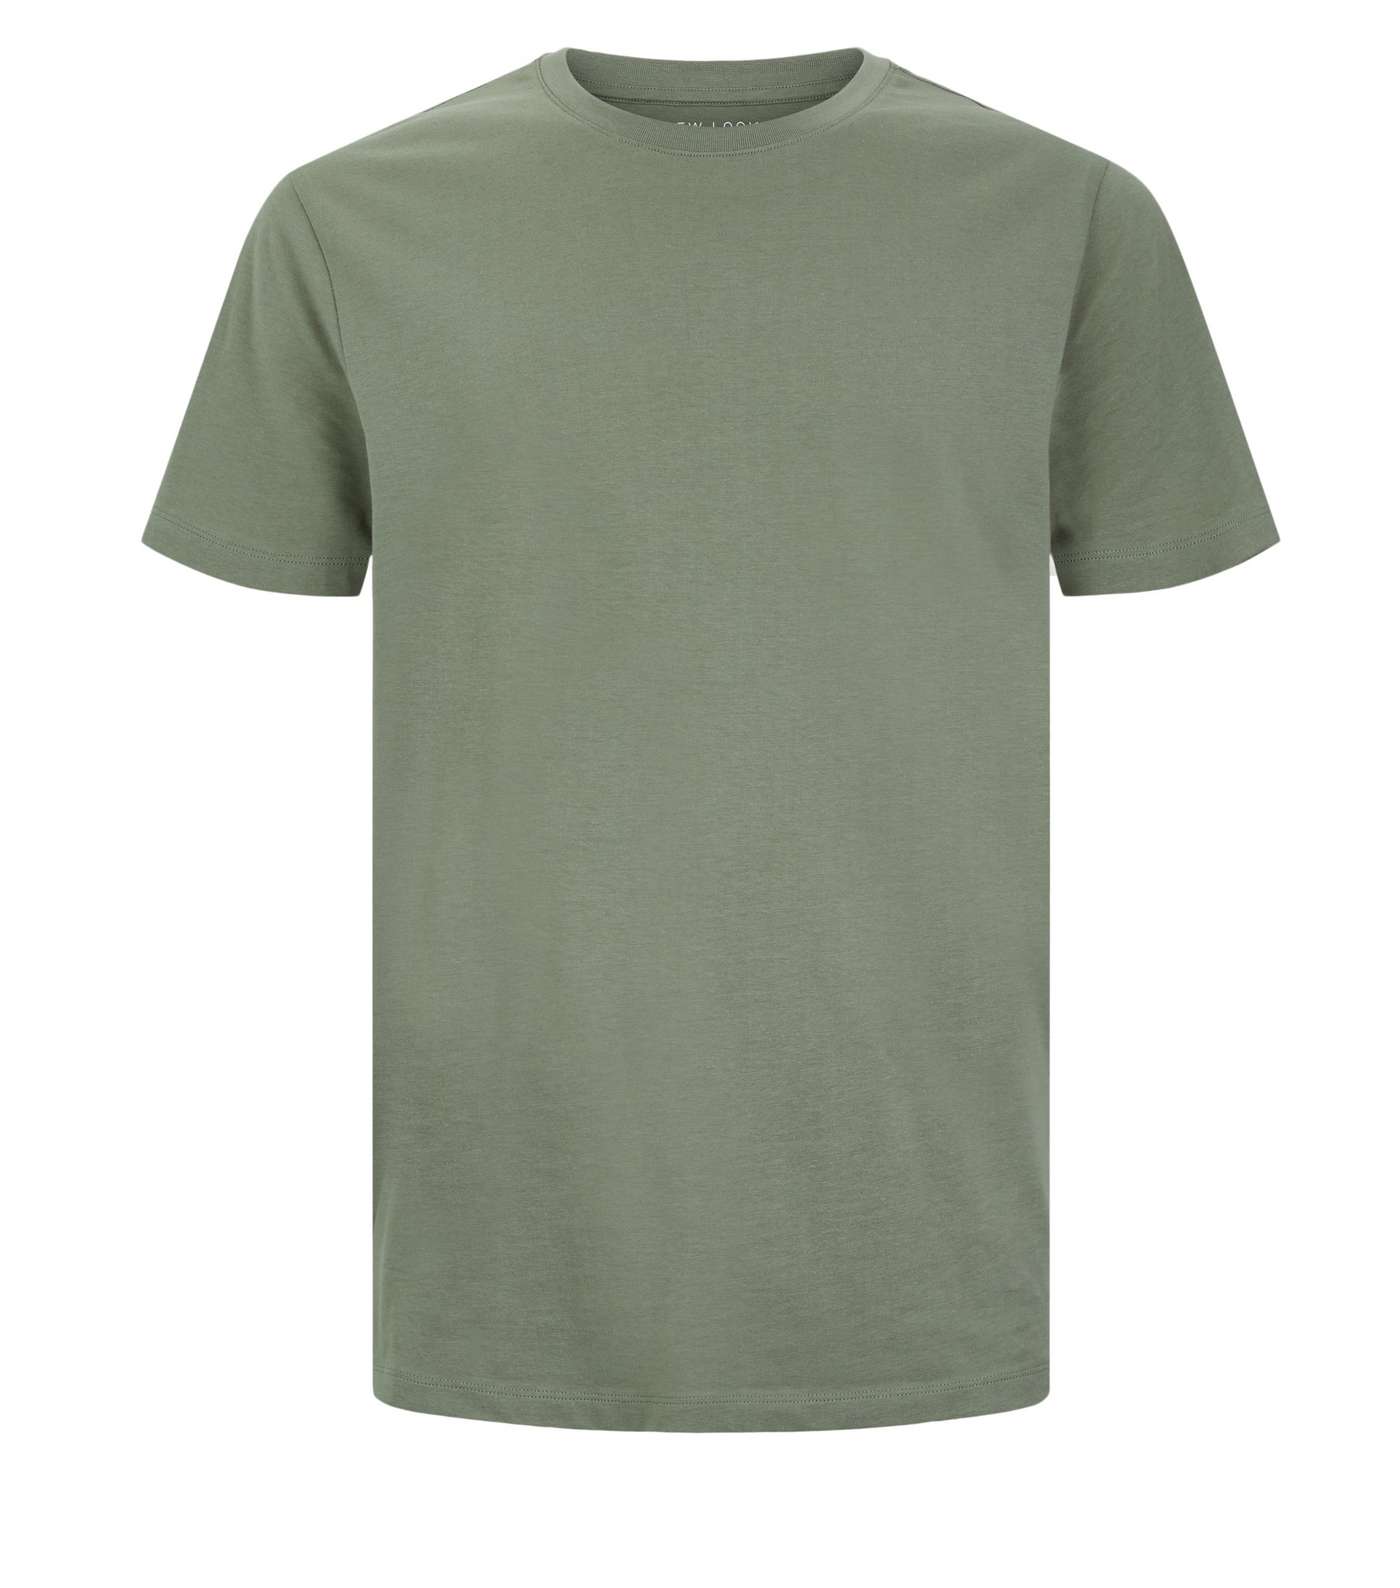 Olive Crew Neck T-Shirt Image 4